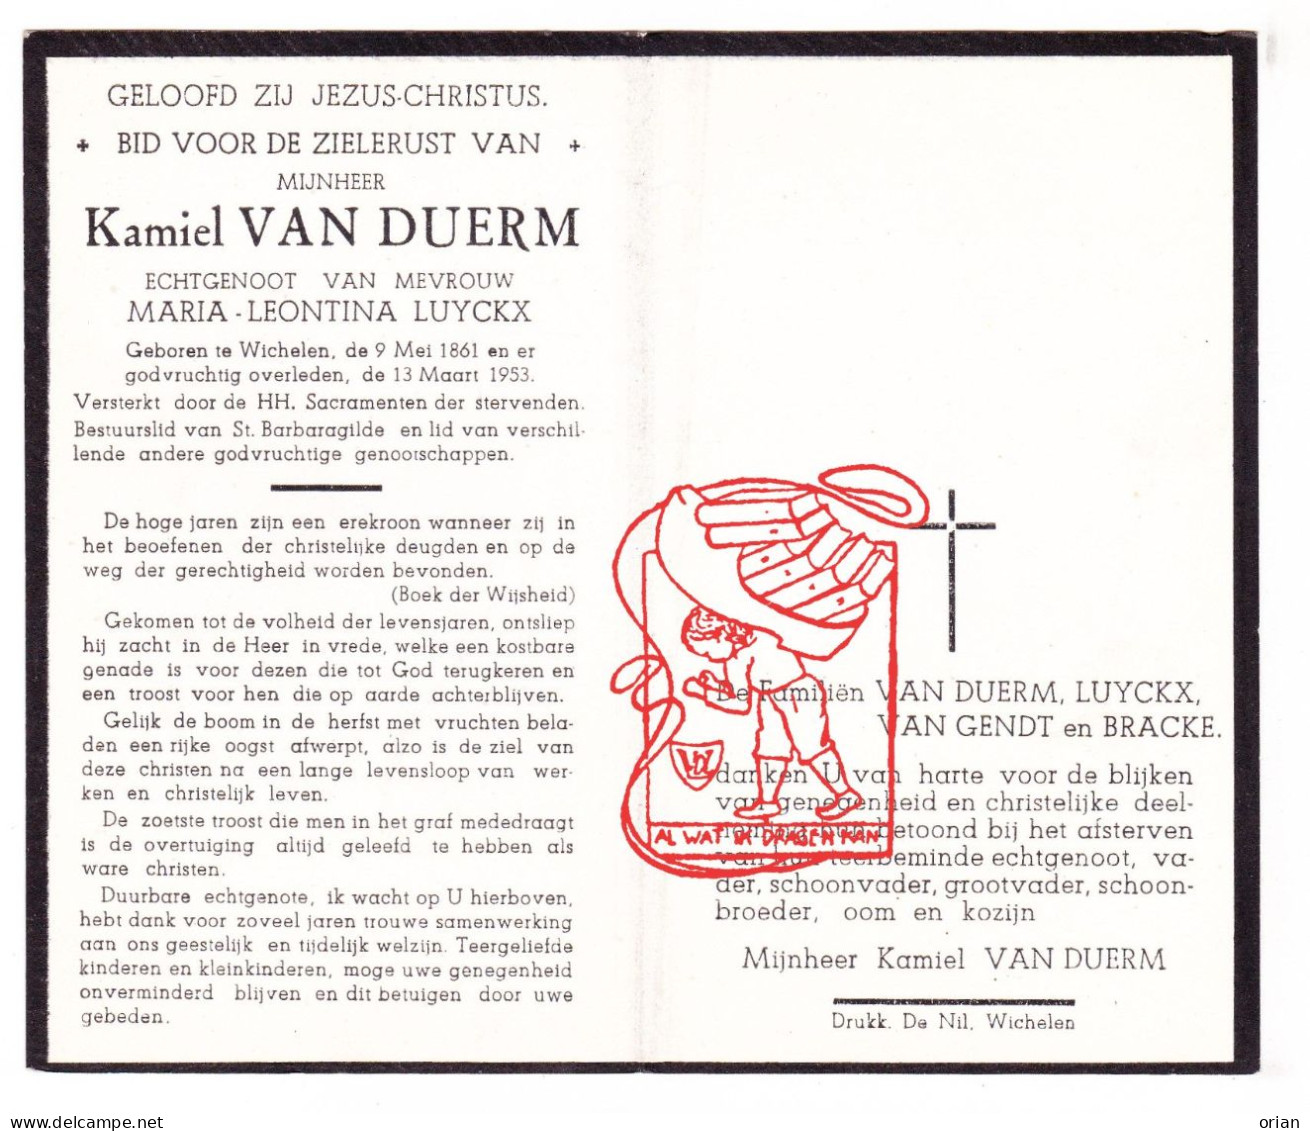 DP Kamiel Van Duerm ° Wichelen 1861 † 1953 X Maria Leontina Luyckx // Van Gendt Bracke - Devotieprenten